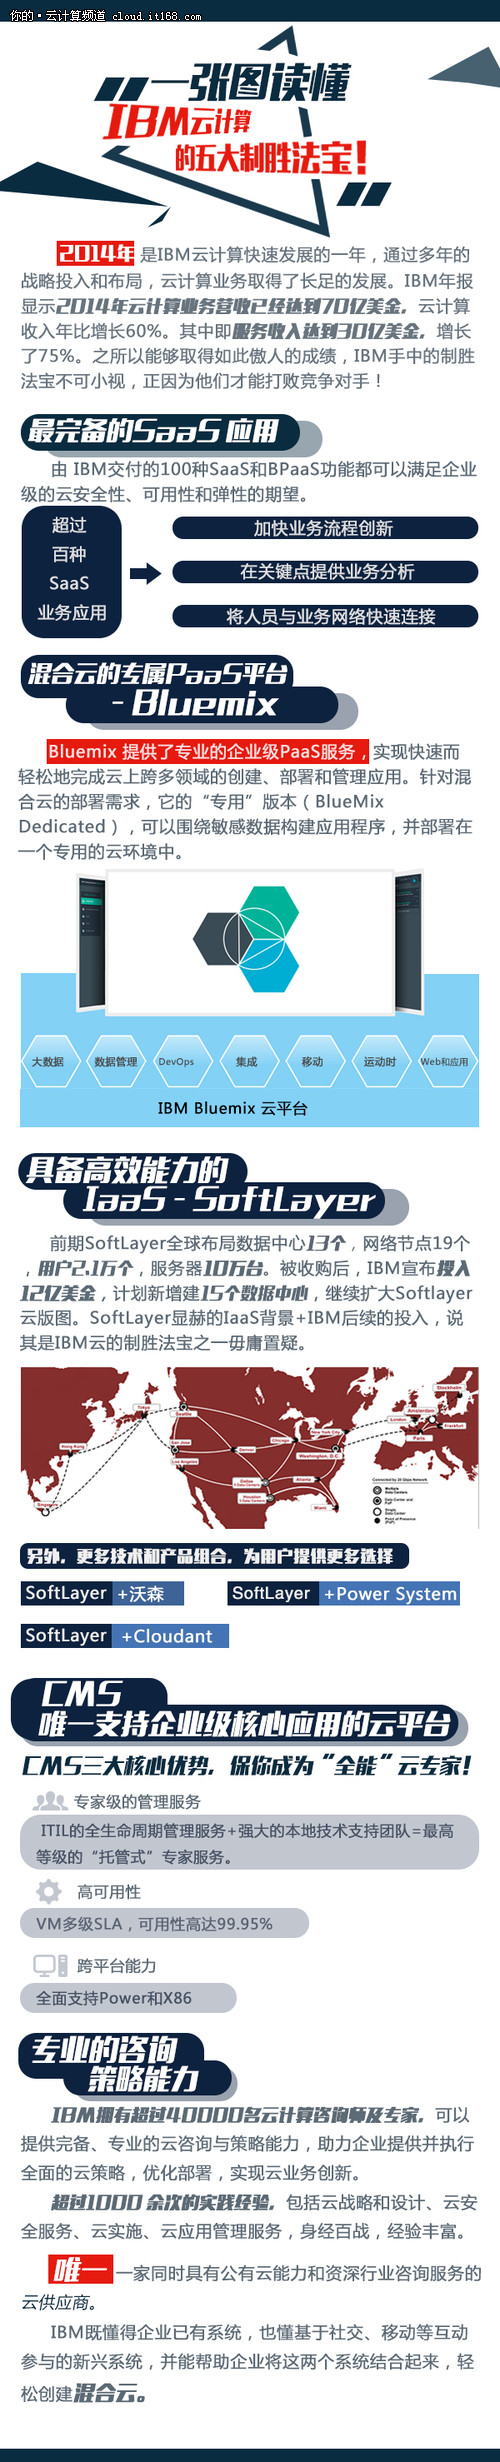 一张图读懂IBM云计算的五大制胜法宝